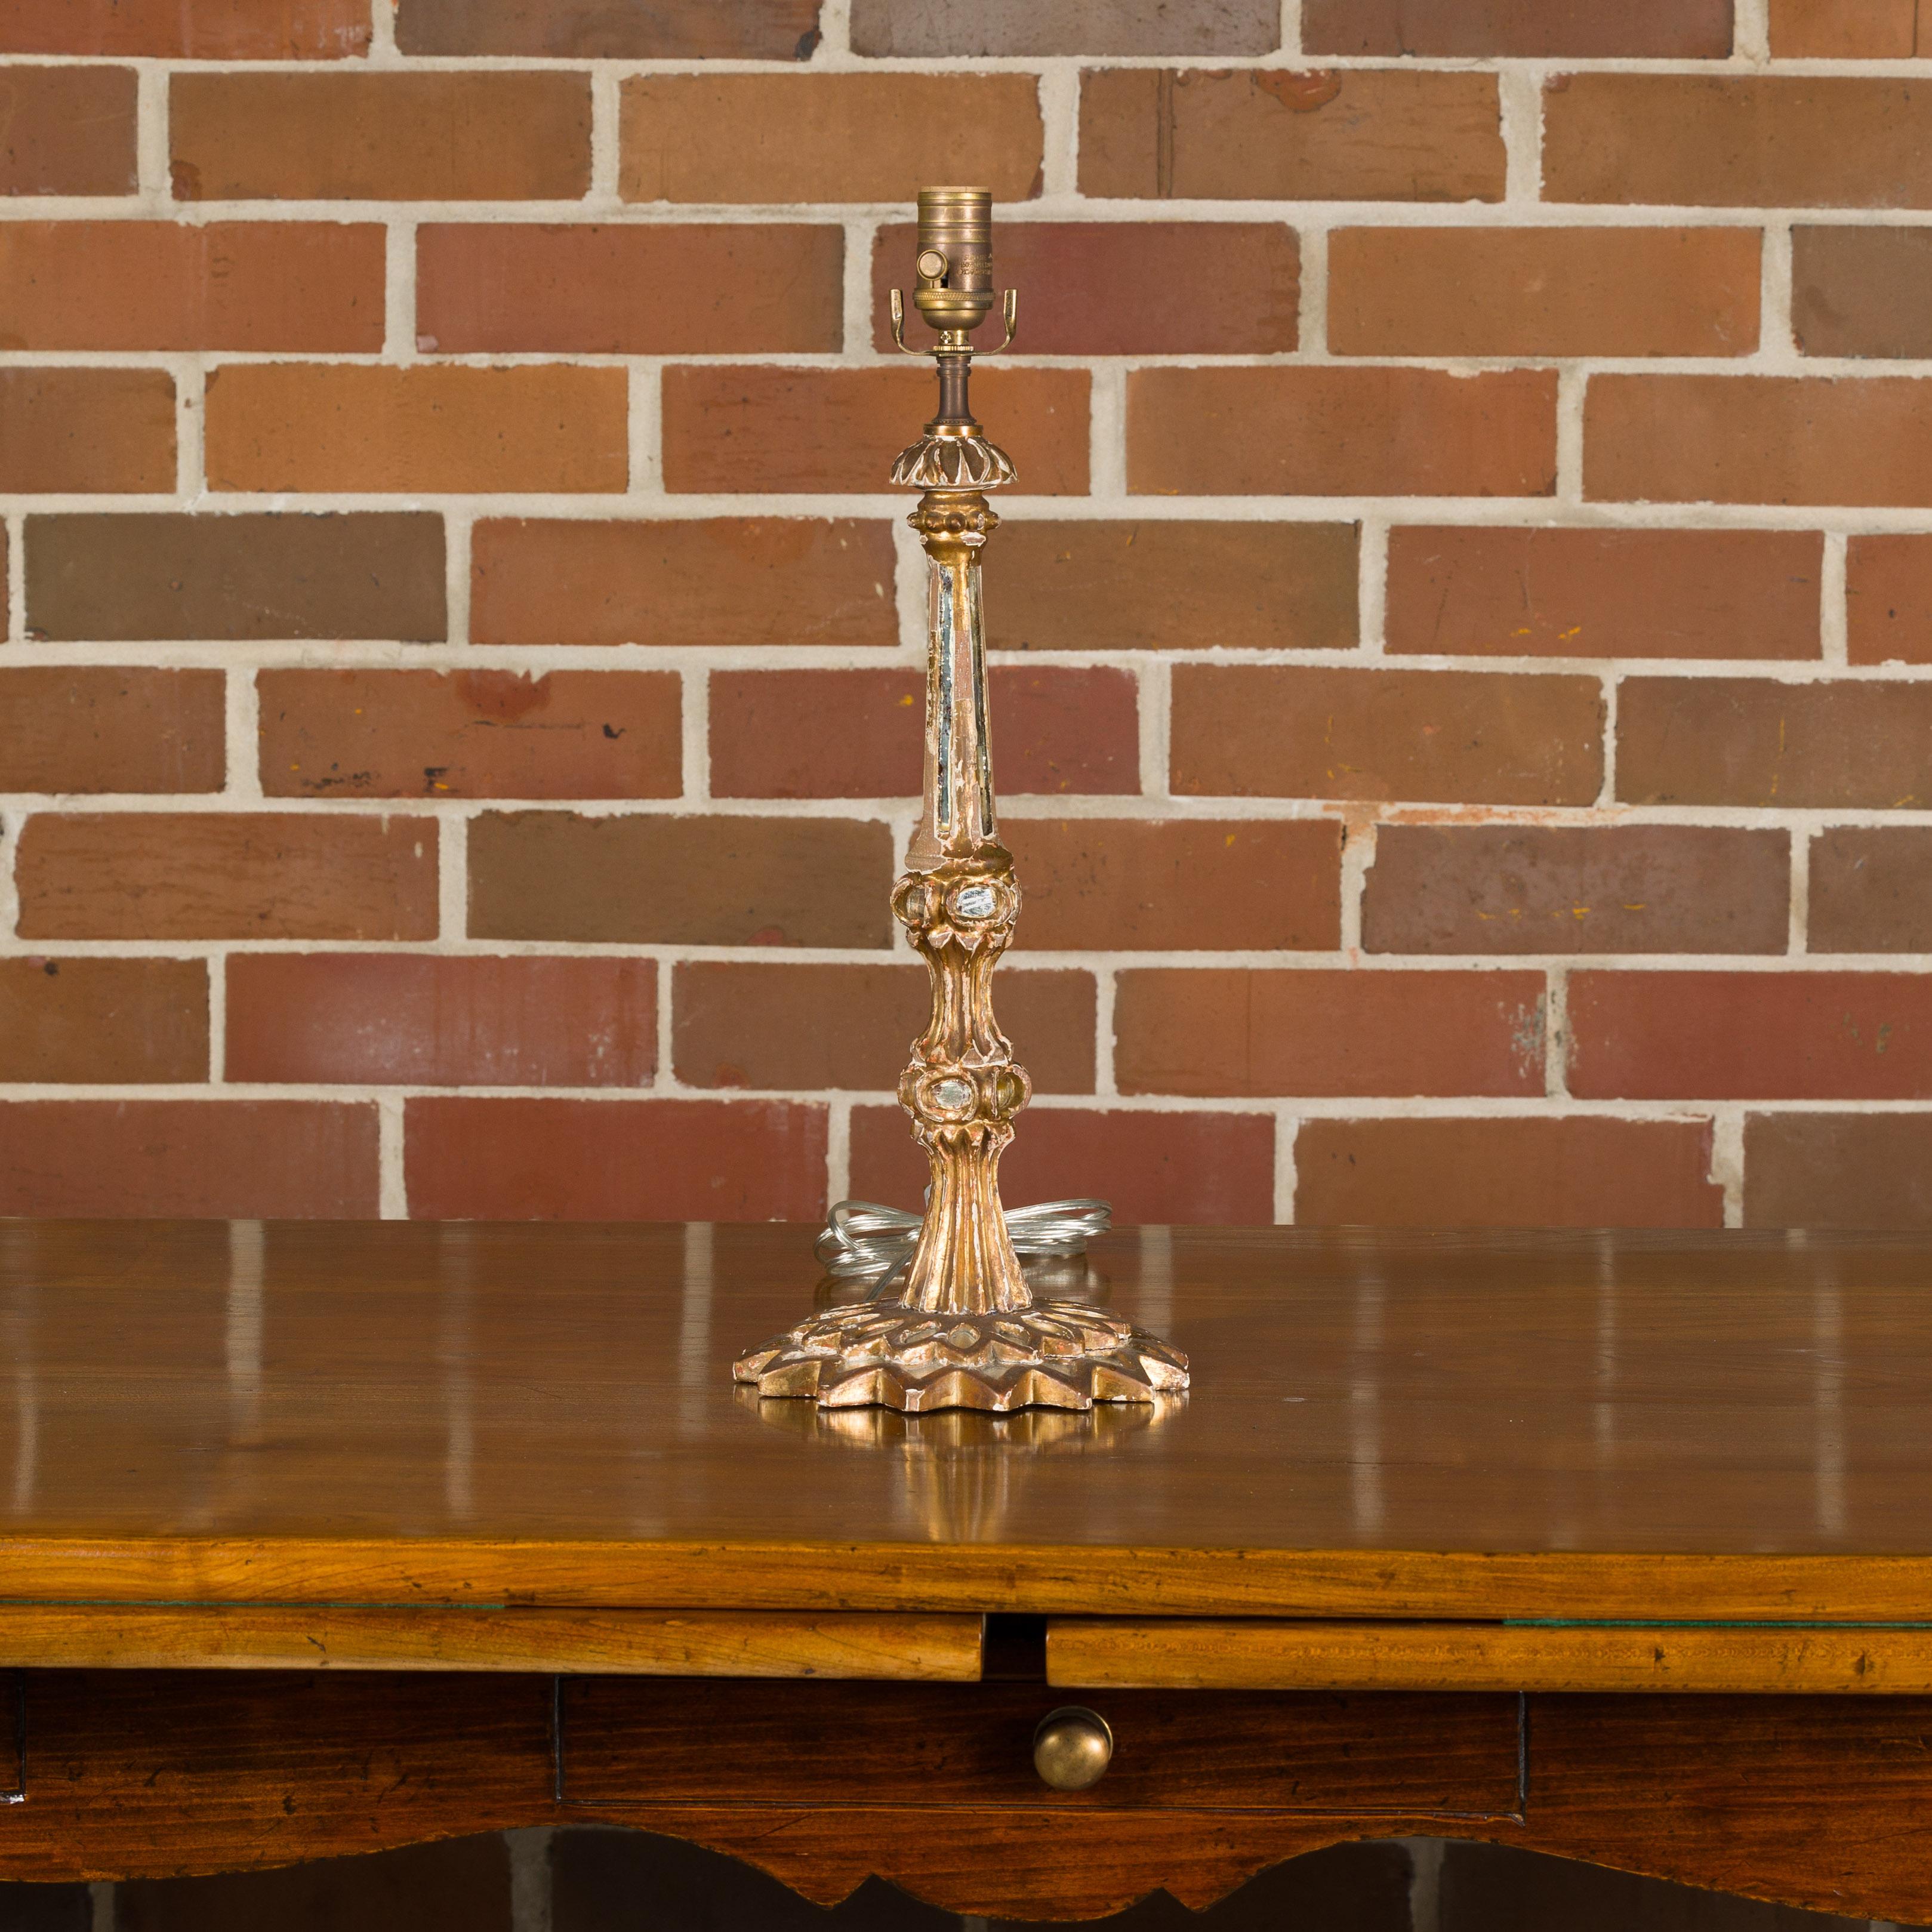 Lampe de table italienne en bois sculpté et doré, datant de 1920 environ, avec des miroirs encastrés et une base rayonnante en forme de soleil. Laissez-vous séduire par l'allure opulente de cette lampe de table italienne en bois sculpté et doré,